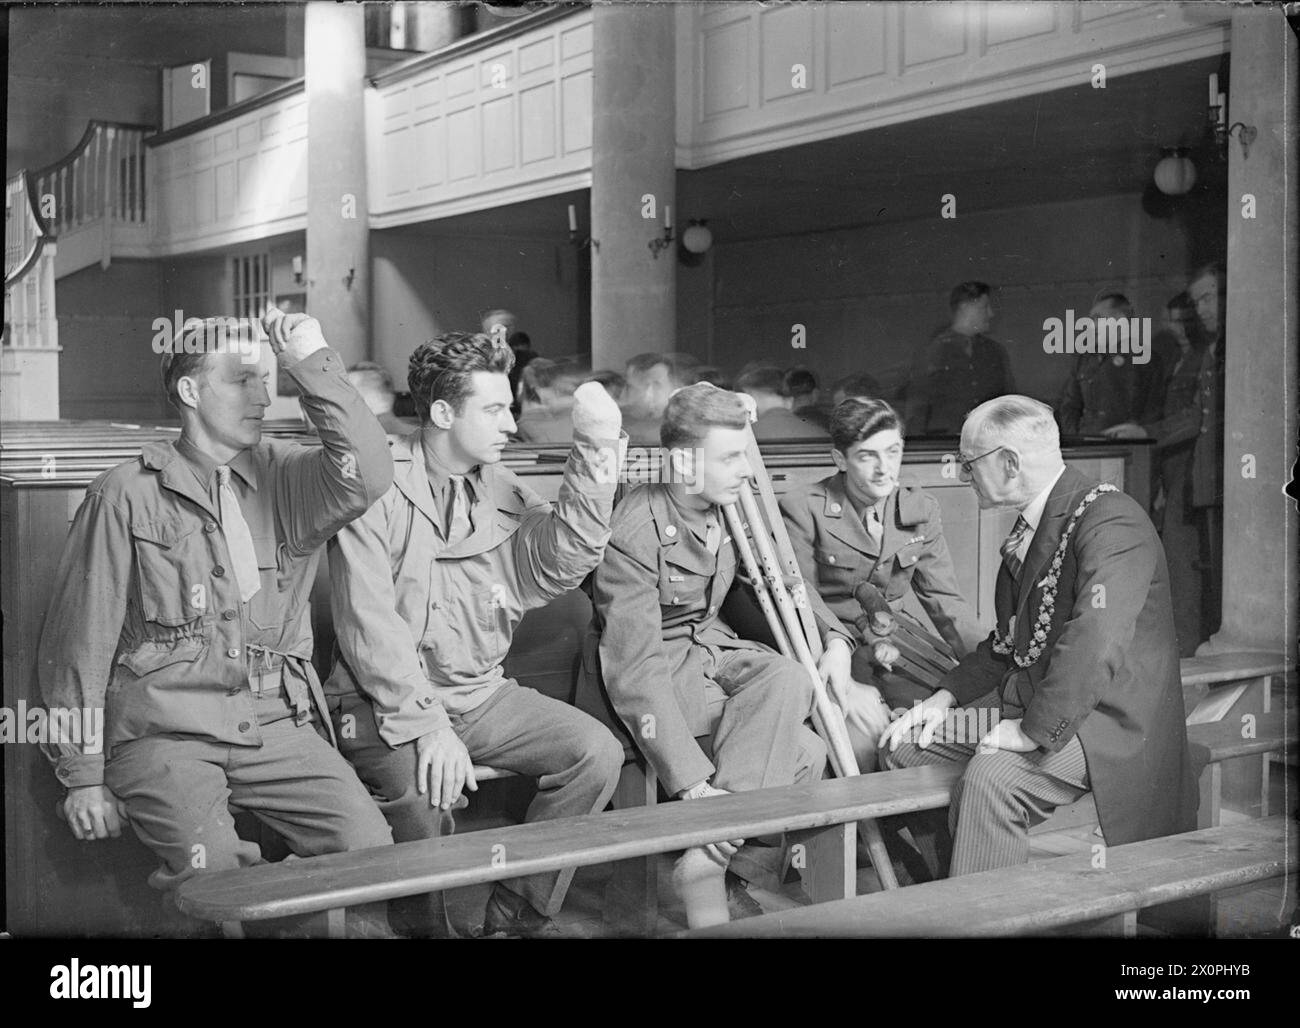 LES SOLDATS AMÉRICAINS VISITENT WESLEY'S CHAPEL, BRISTOL, GLOUCESTERSHIRE, ANGLETERRE, ROYAUME-UNI, 12 AVRIL 1945 - le maire de Bristol, échevin F C Cottrell (à droite), discute avec un groupe de soldats américains blessés après un service à la chapelle John Wesley à Bristol. De gauche à droite, il s'agit du Sergent Lloyd K Bjelland, du Sergent Walter Greaney, du PFC Sherman laire et du PFC Walter Haid. Les Sgts Bjelland et Greaney ont tous les deux des attelles sur leurs bras gauches, donc ils sortent à des angles étranges. Le PFC laire a des béquilles Banque D'Images